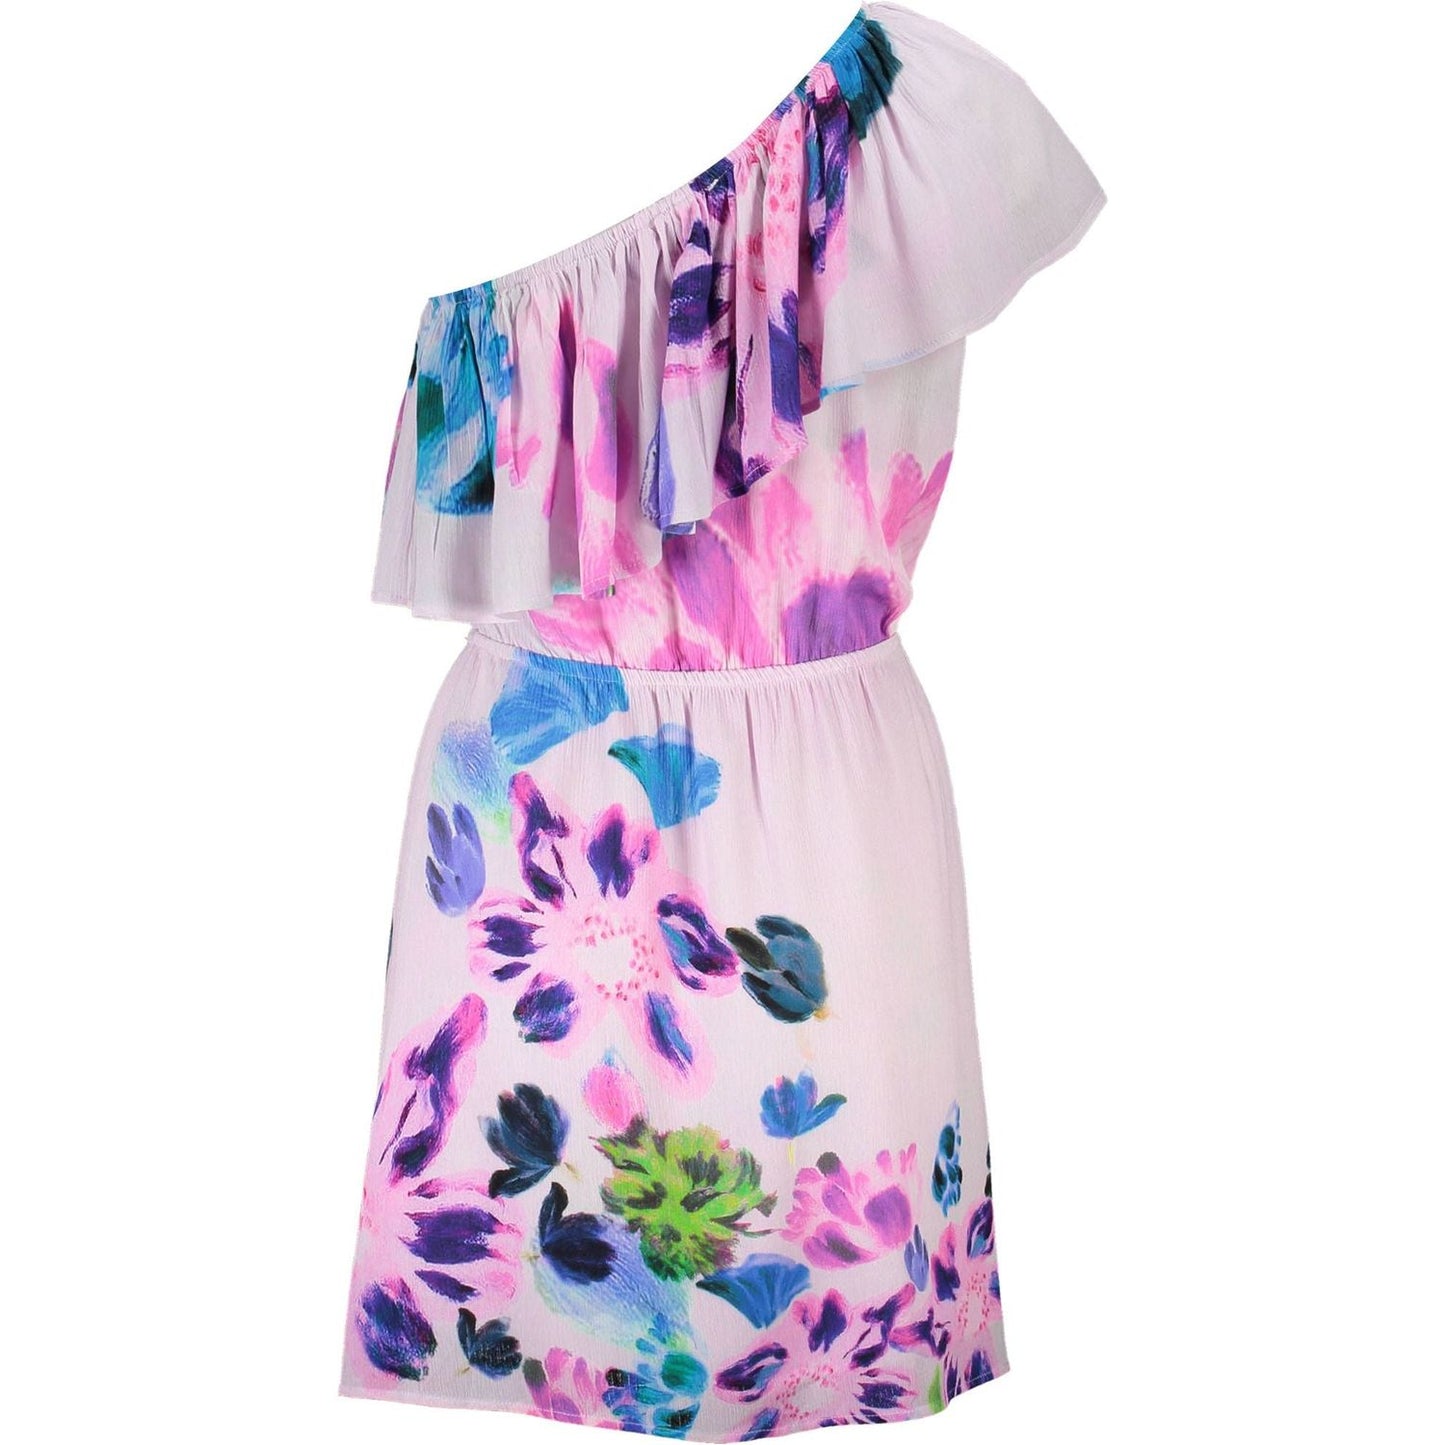 DesigualChic Pink One-Shoulder Short Dress with Contrasting DetailsMcRichard Designer Brands£109.00